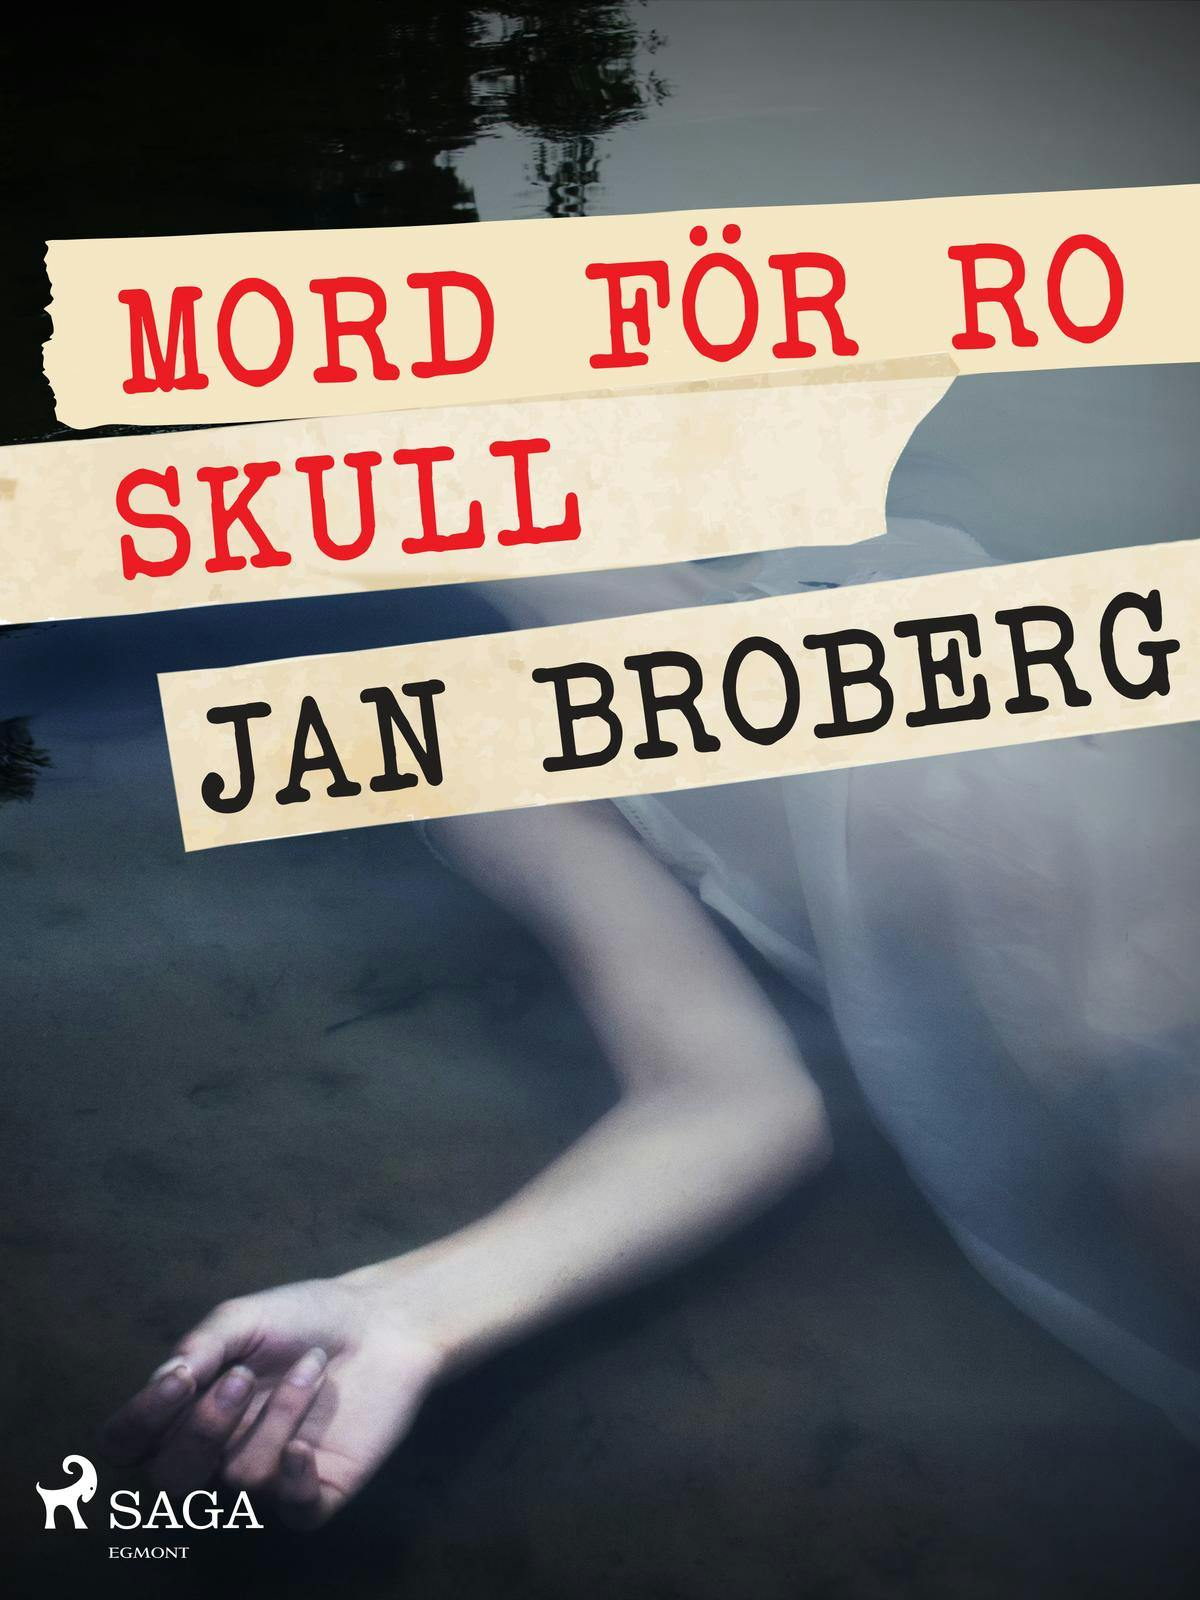 Mord för ro skull - Jan Broberg